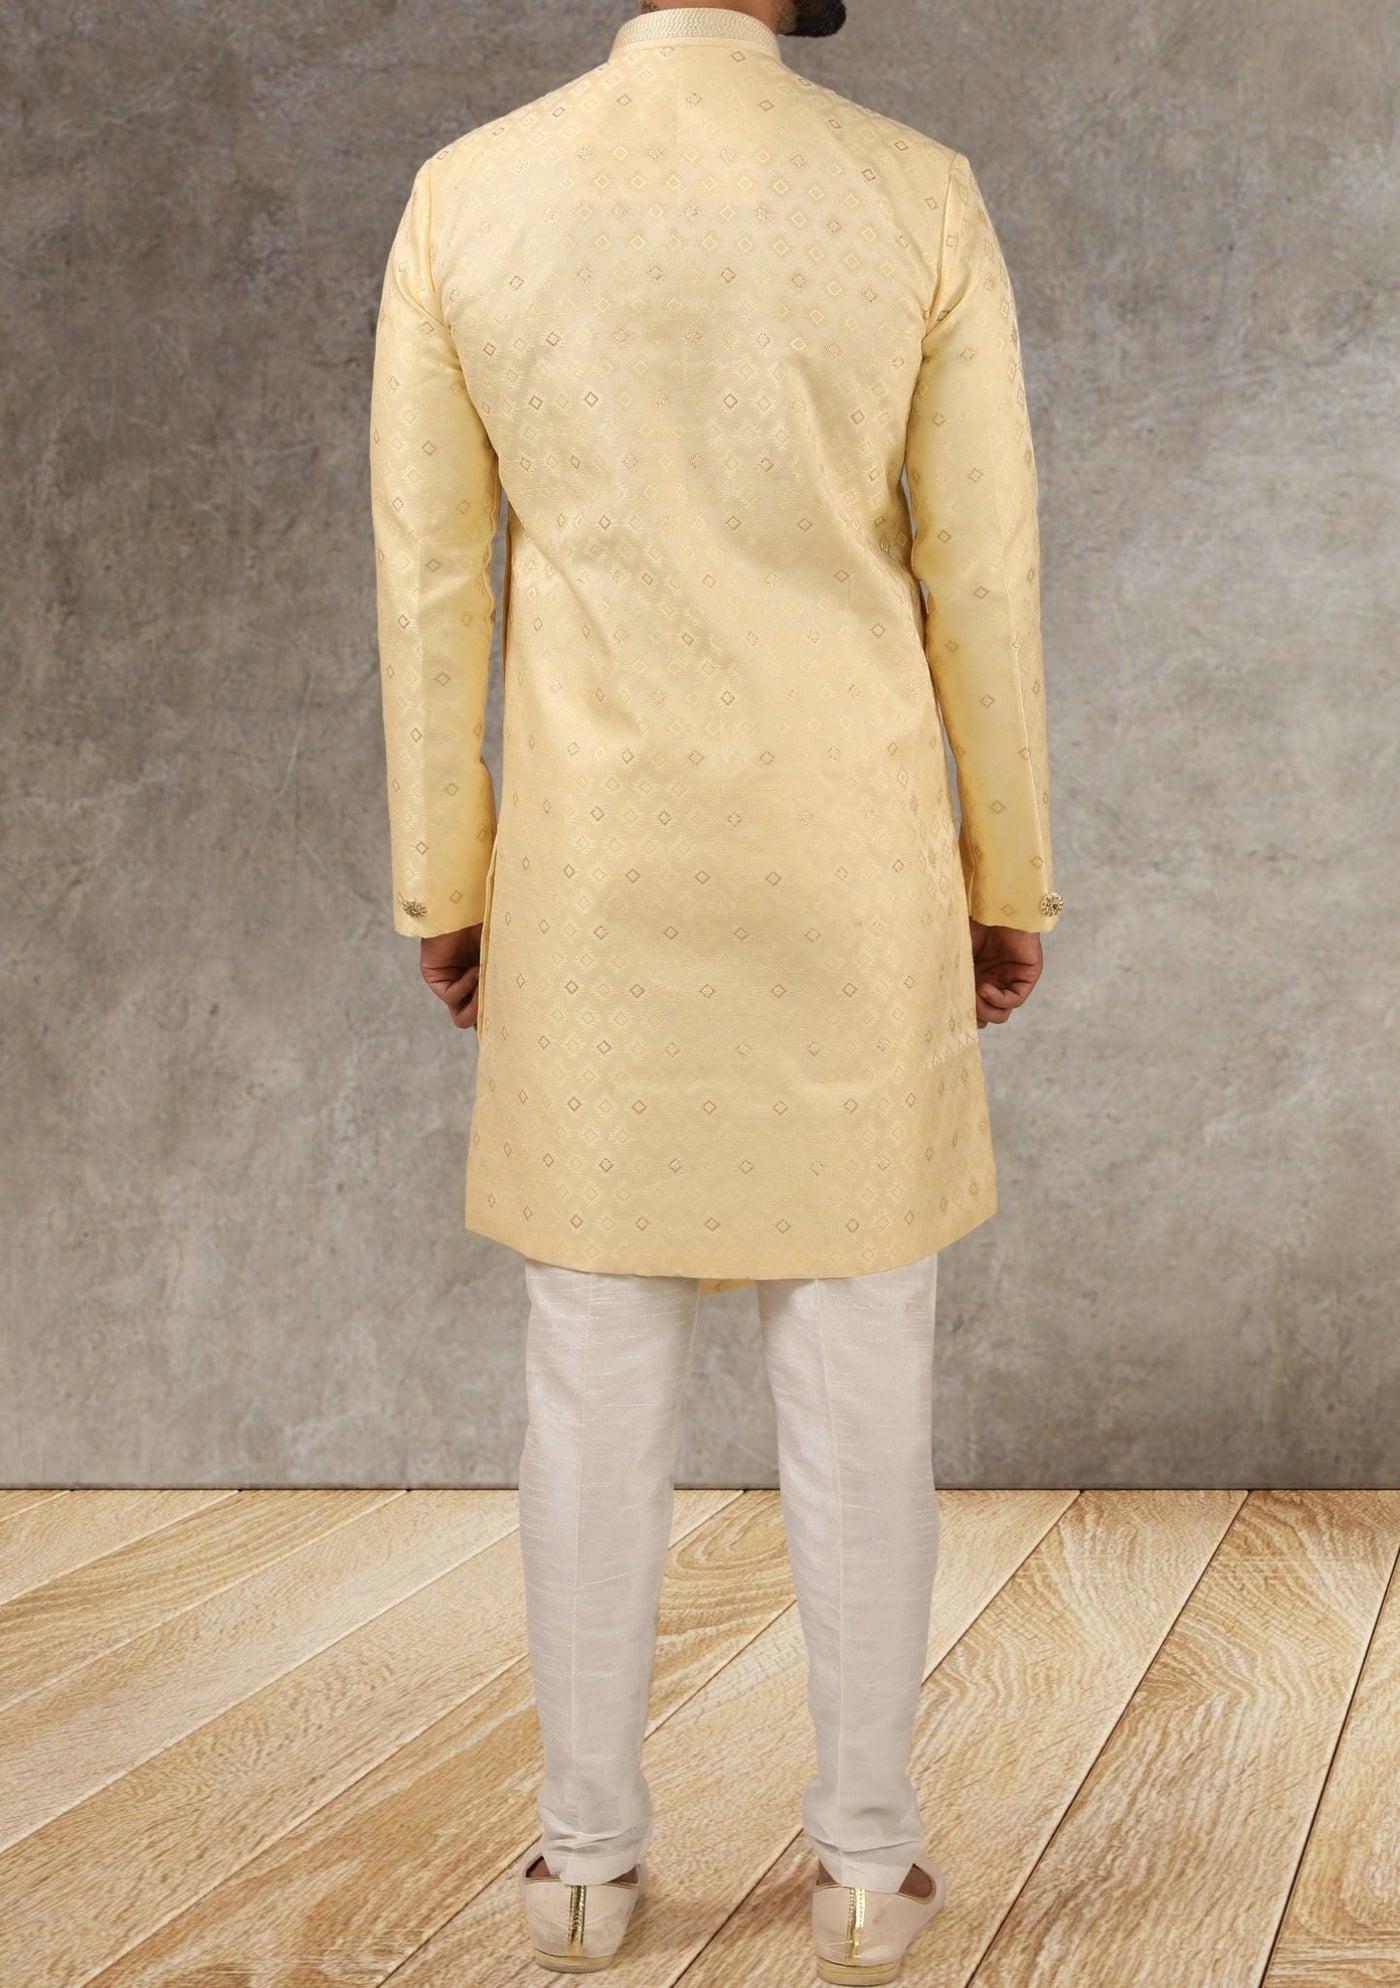 Men's Indo Western Party Wear Sherwani Suit - db20659